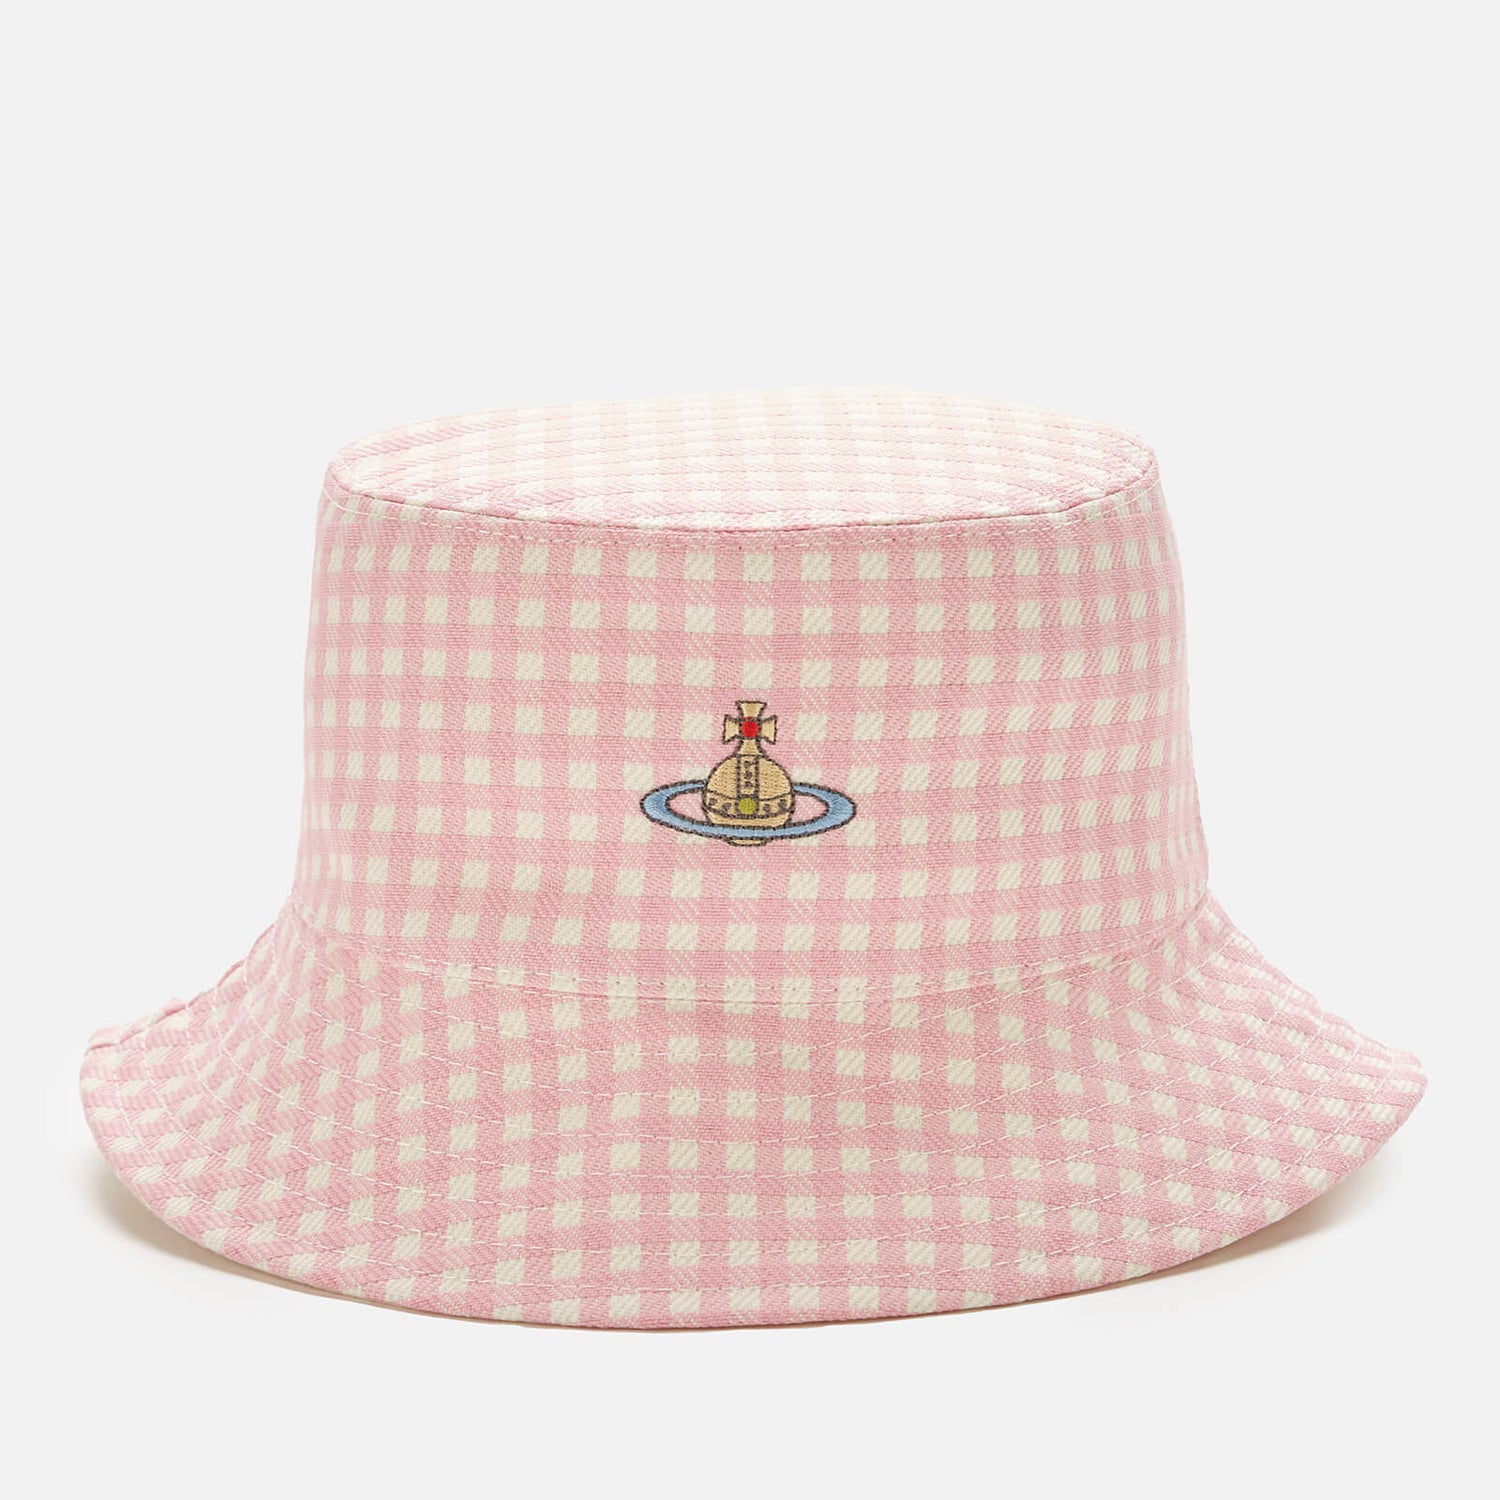 Vivienne Westwood Women's Patsy Bucket Hat - Pink